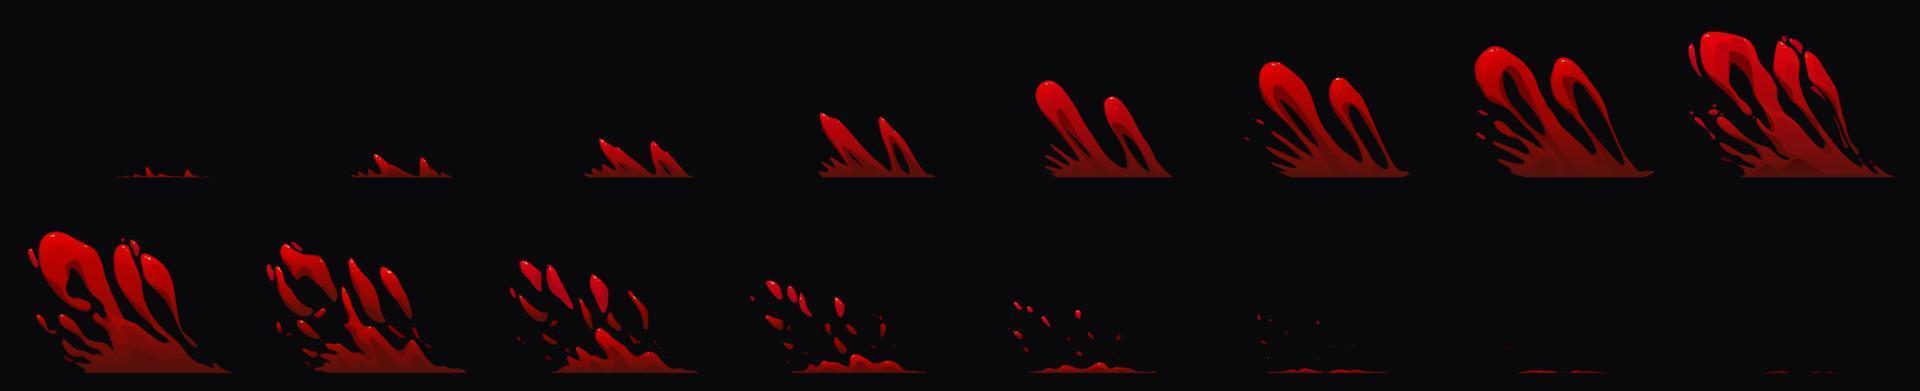 Blutspritzer-Sprite-Blatt für Spiel oder Animation vektor